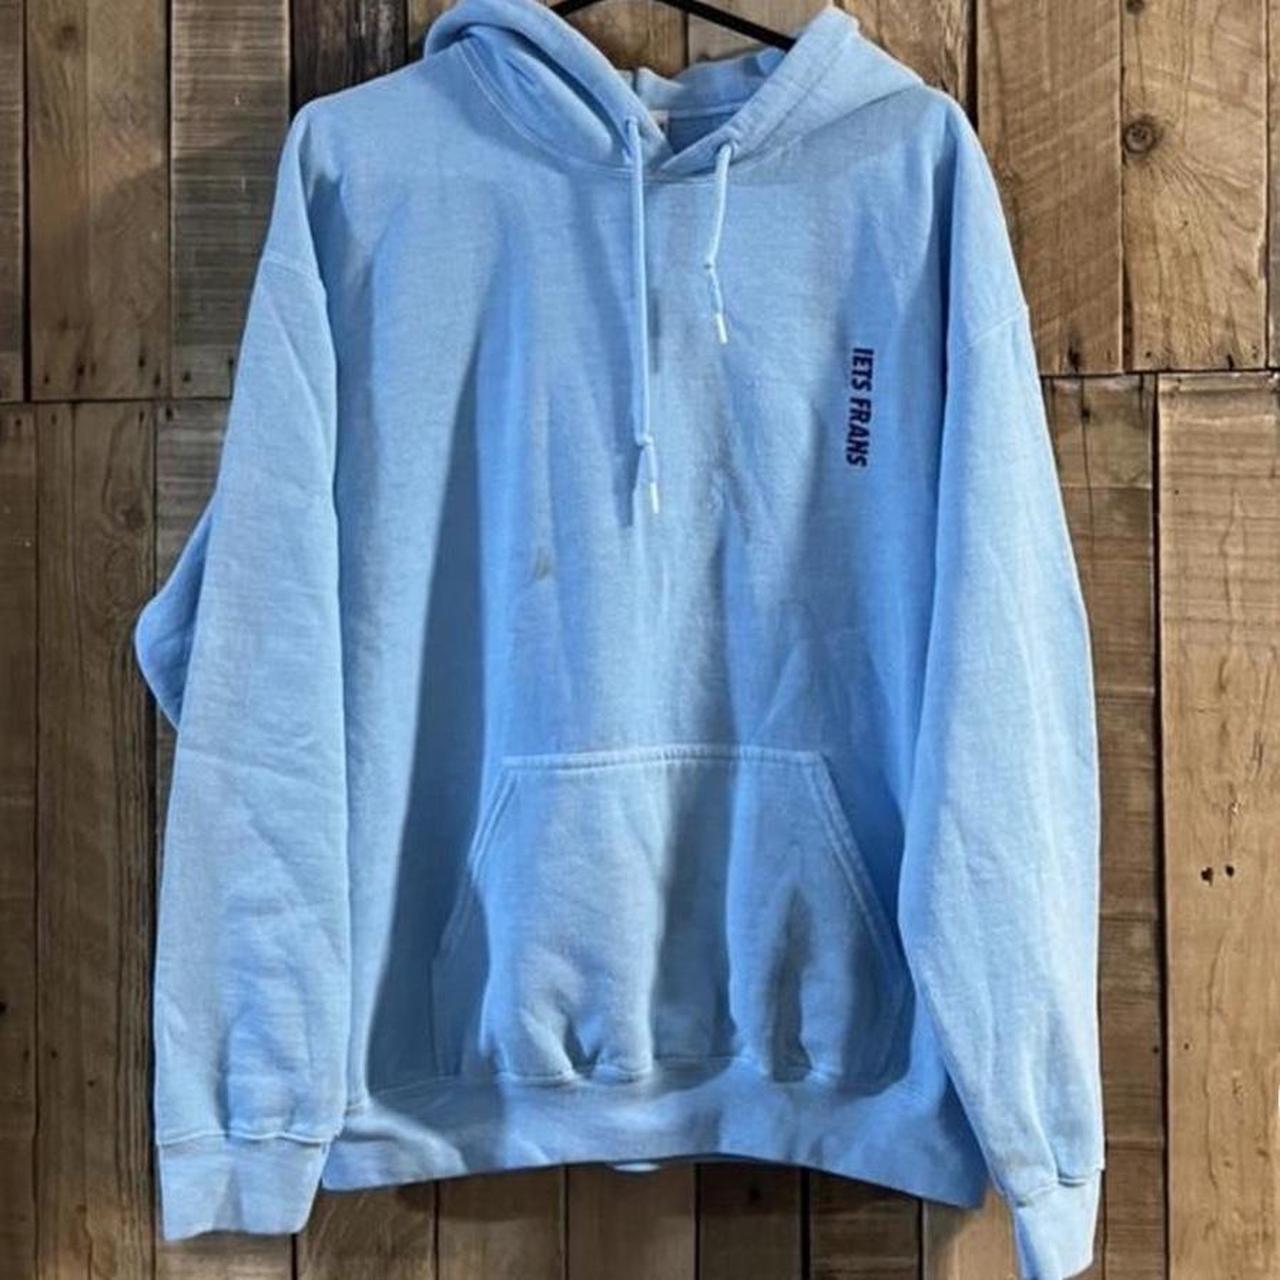 Urban outfitter iets frans hoodie Baby blue hoodie... - Depop